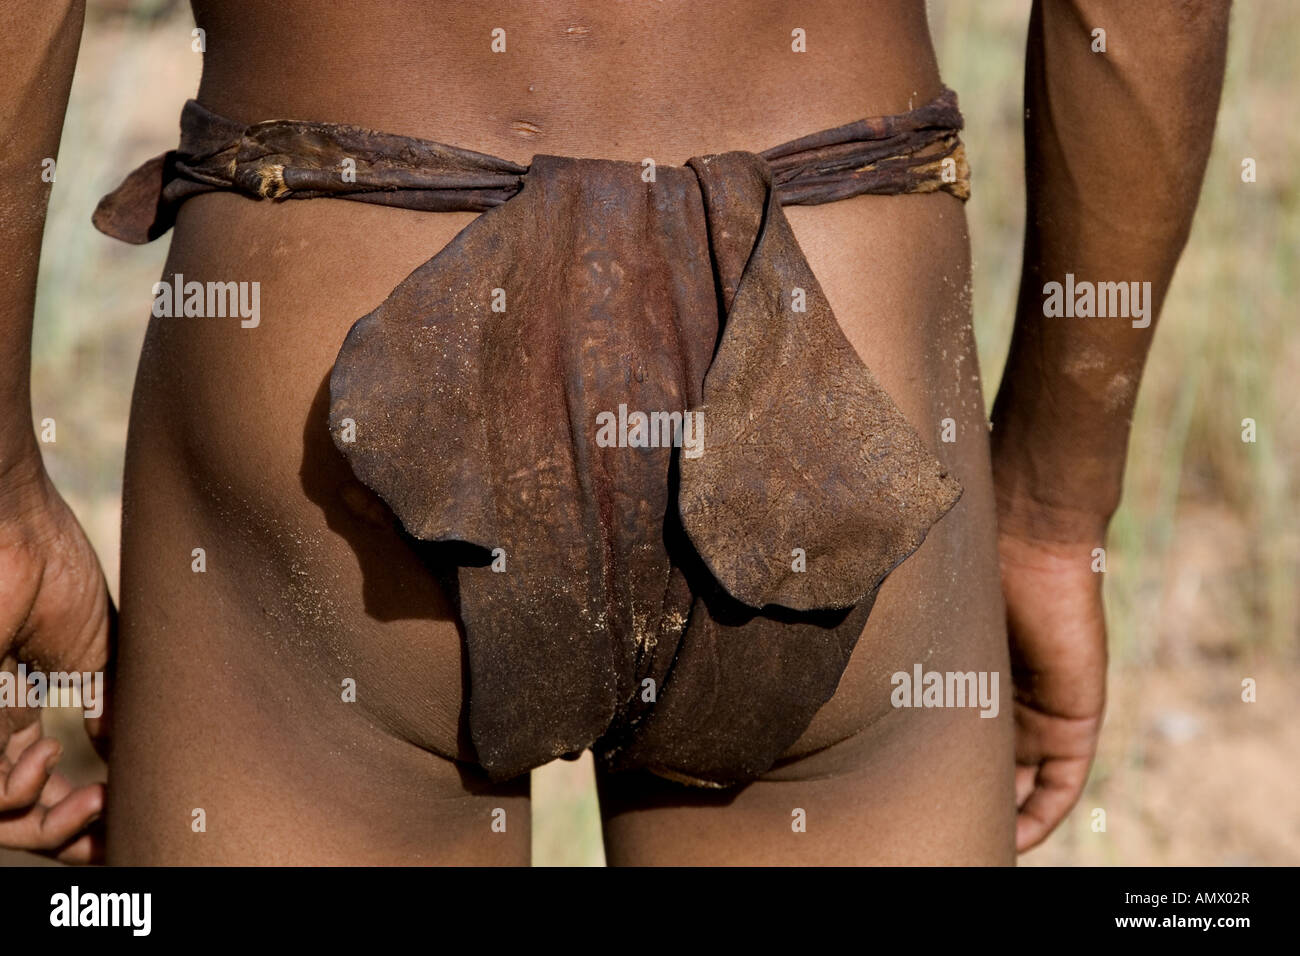 Vêtements bushman. Pagne traditionnel fabriqué à partir de cuir, springbuck Namibie Banque D'Images